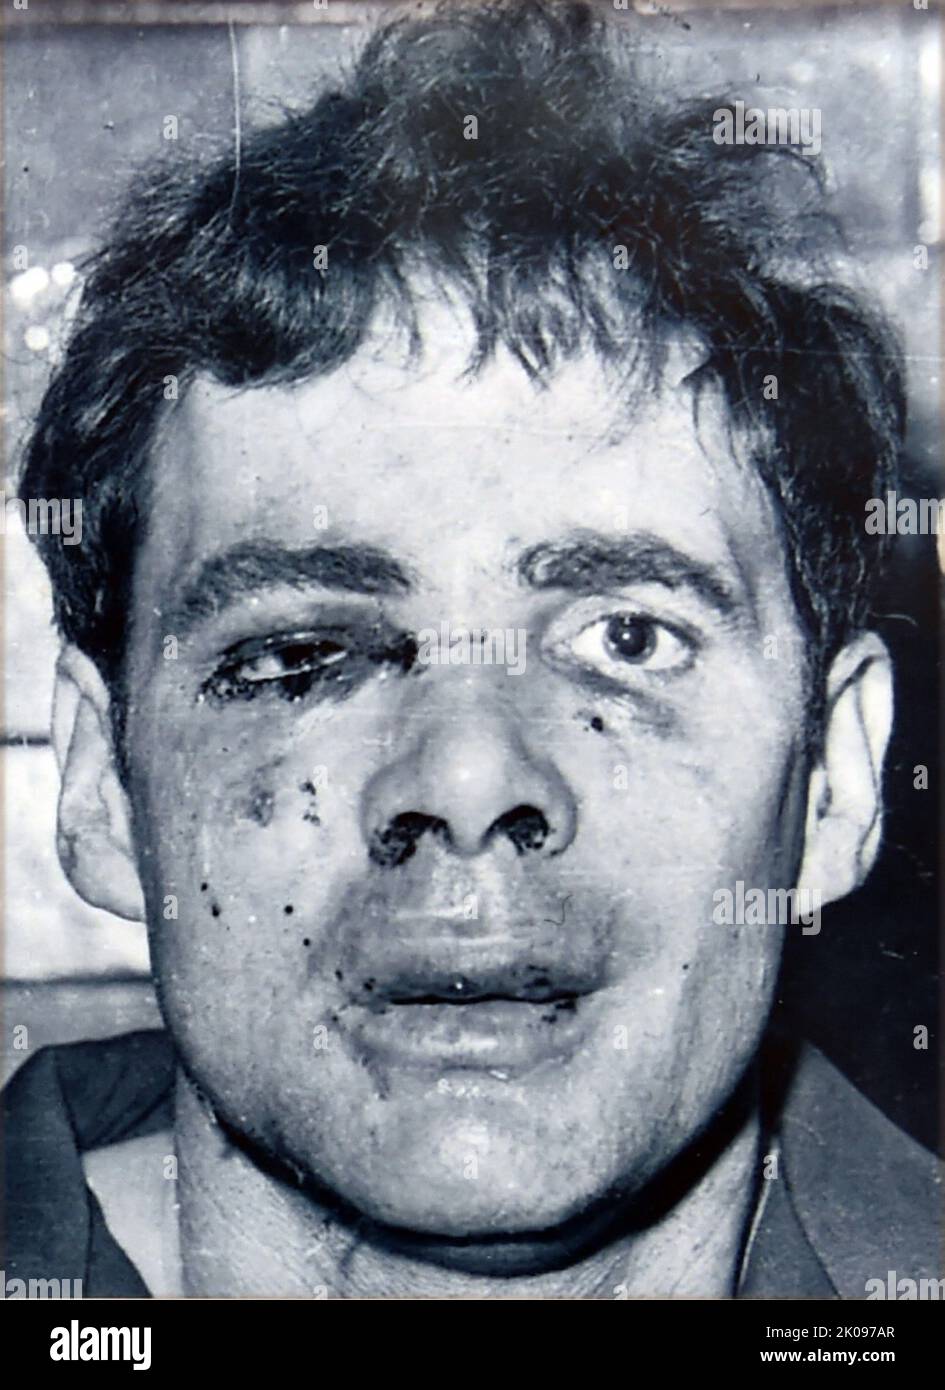 Donald Neilson (geb. Donald Nappey; 1. August 1936 - 18. Dezember 2011), alias der 'Black Panther', war ein britischer bewaffneter Räuber, Entführer und mehrfacher Mörder. Zwischen 1971 und 1974 ermordete er drei Männer bei Überfällen von Subpostämtern und ermordete im Januar 1975 das Entführer-Opfer Lesley Whittle, eine Erbin aus Highley, Shropshire. Er wurde später in diesem Jahr festgenommen und im Juli 1976 zu lebenslanger Haft verurteilt, die er bis zu seinem Tod im Jahr 2011 im Gefängnis verbüßen musste. Stockfoto